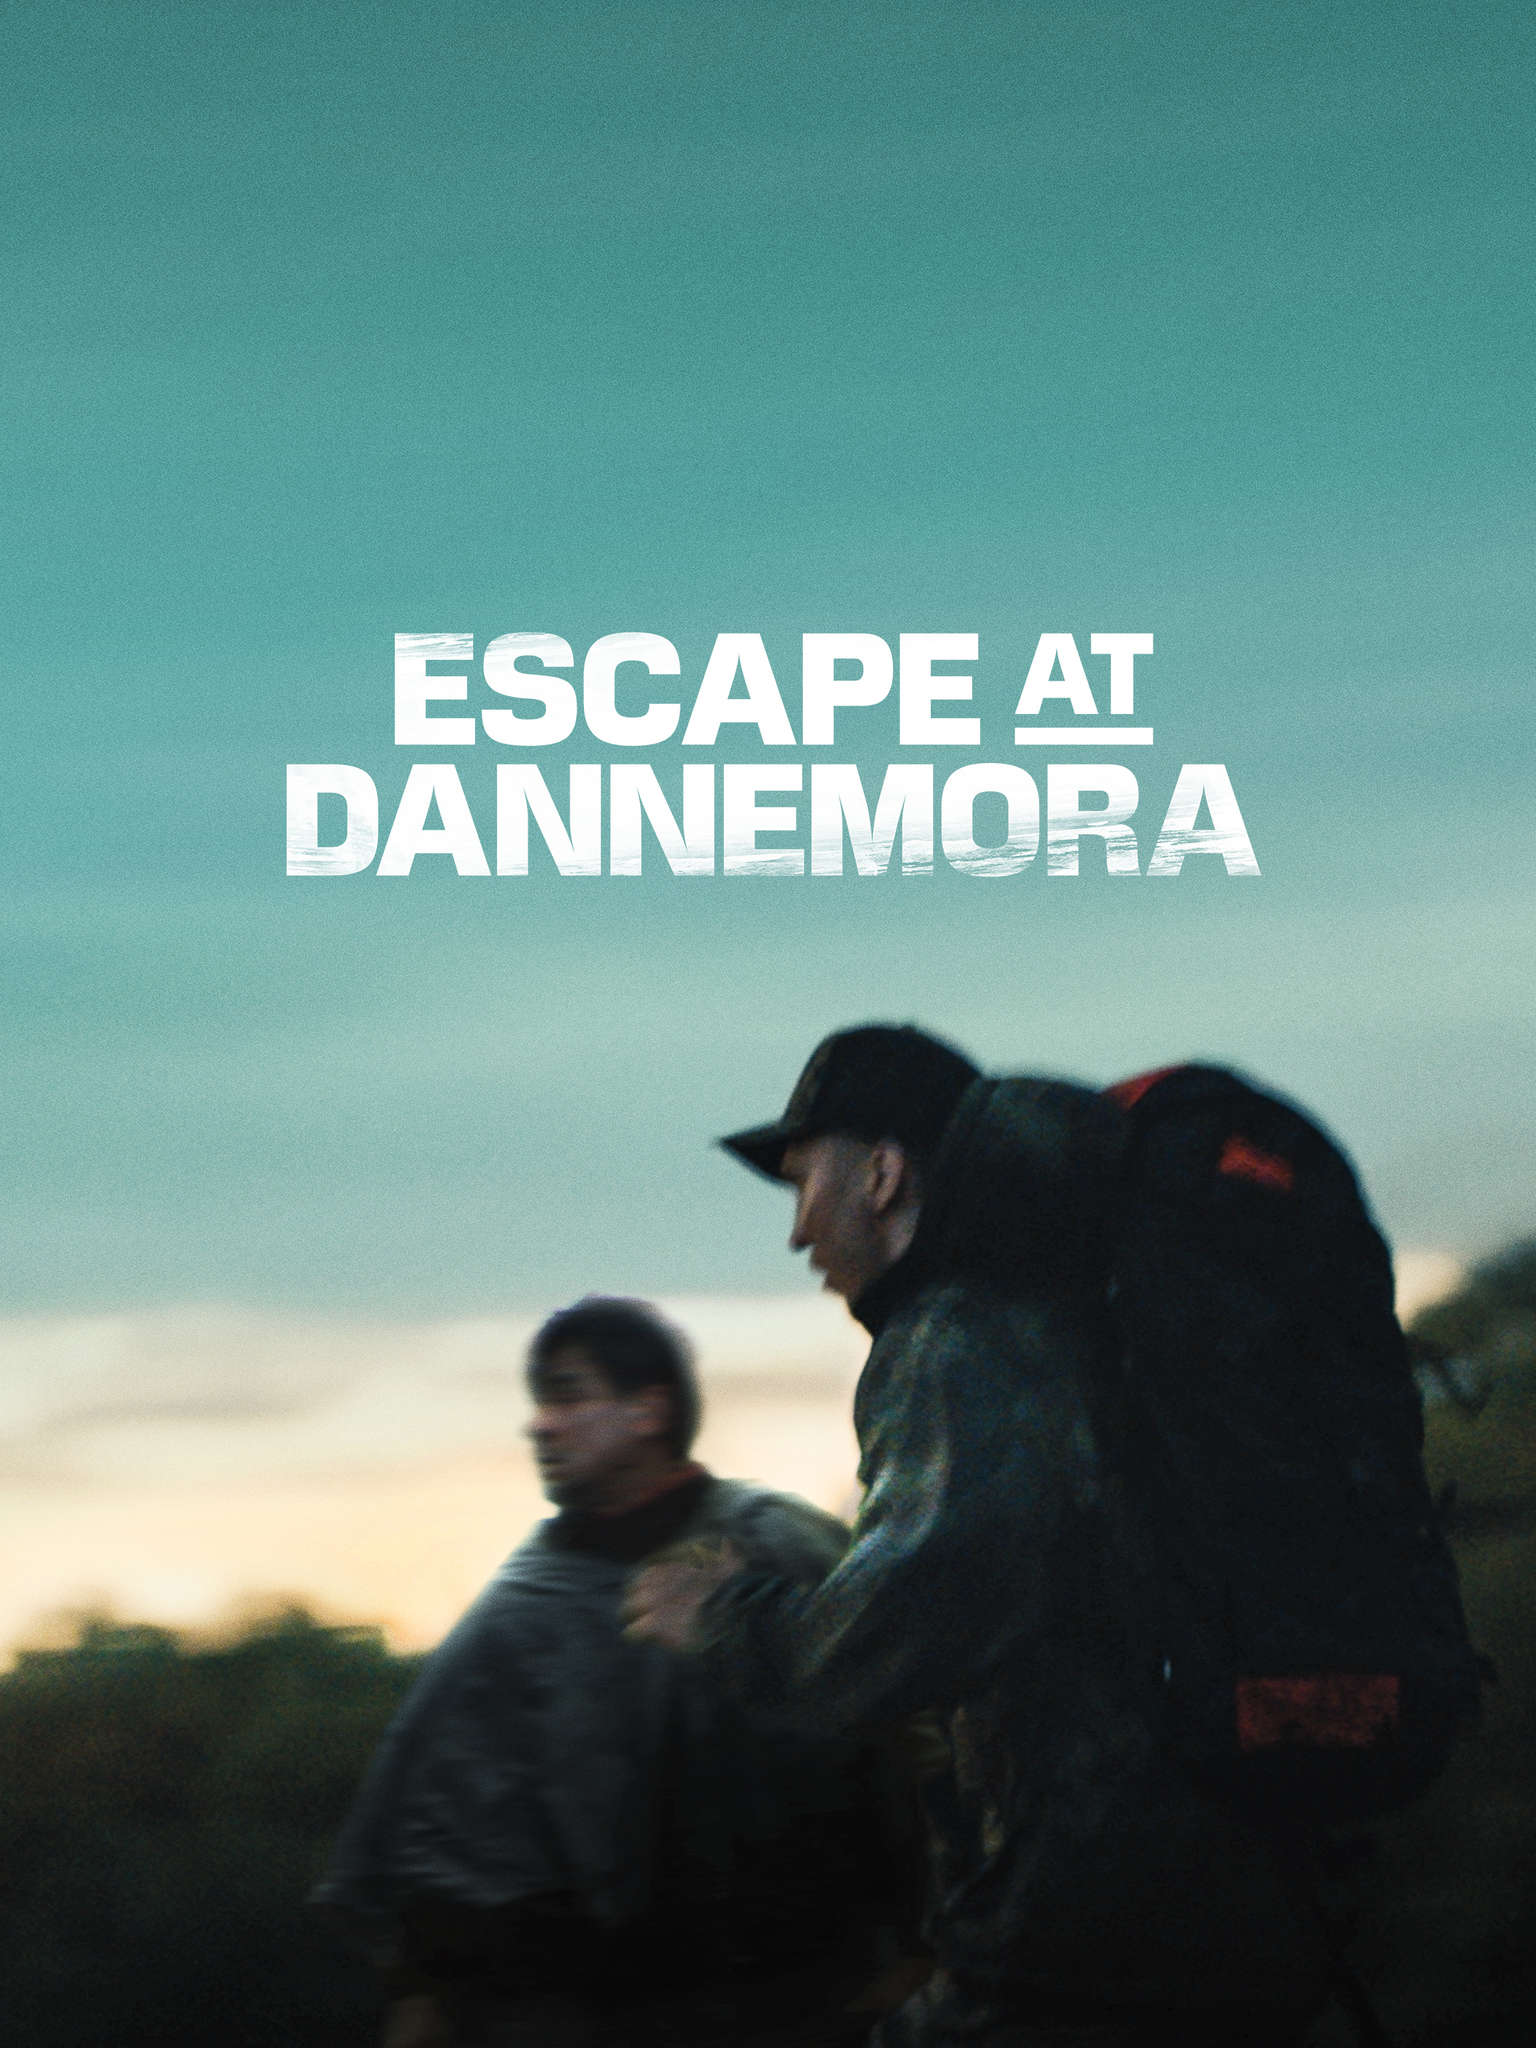 فرار به دانمورا (Escape at Dannemora)